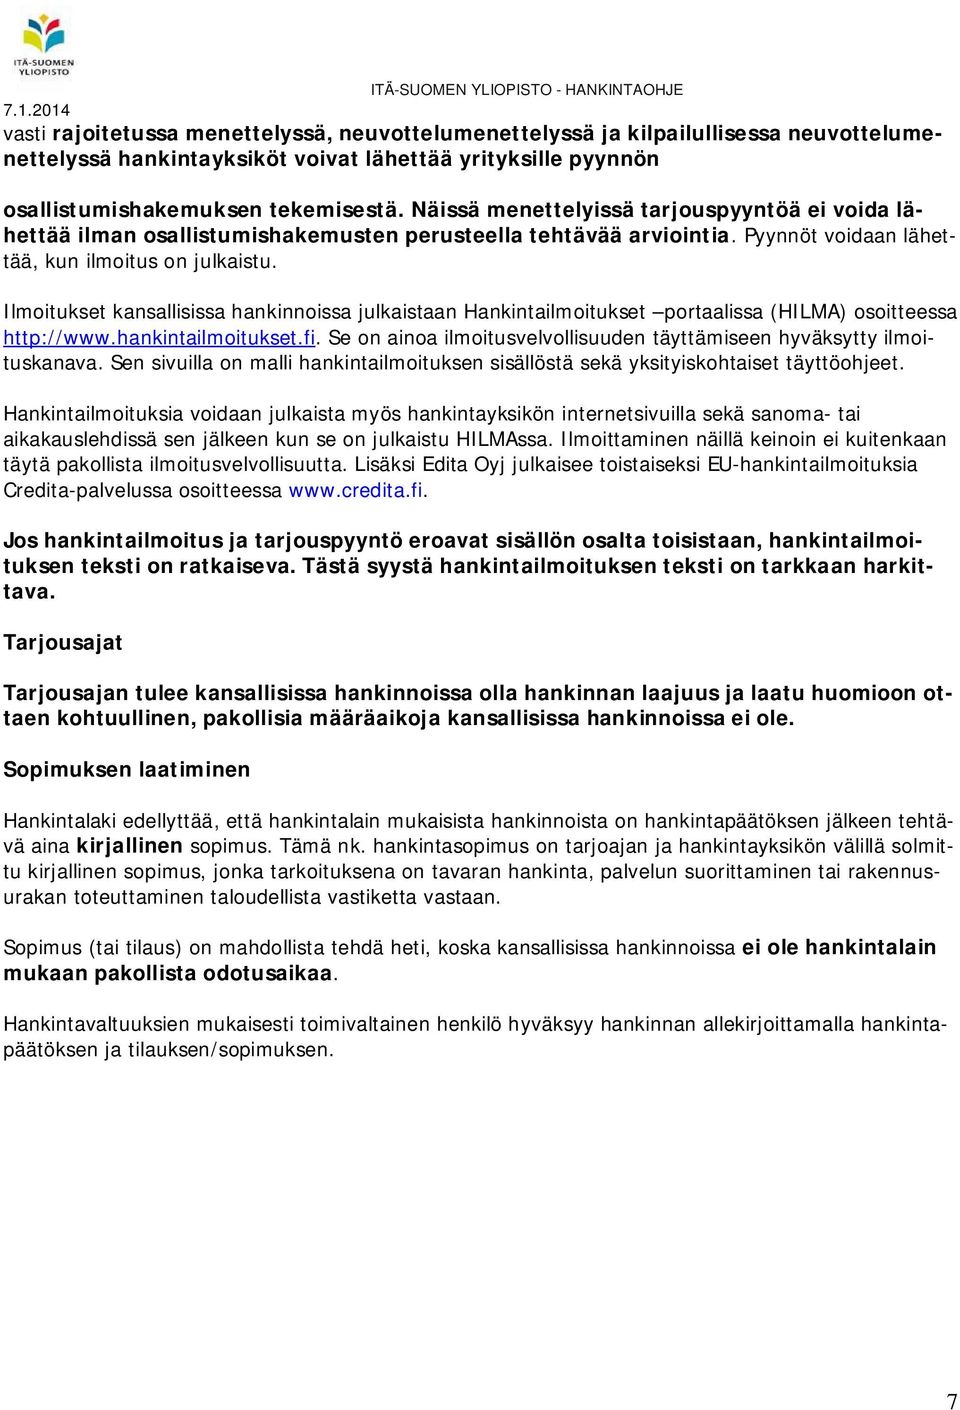 Ilmoitukset kansallisissa hankinnoissa julkaistaan Hankintailmoitukset portaalissa (HILMA) osoitteessa http://www.hankintailmoitukset.fi.